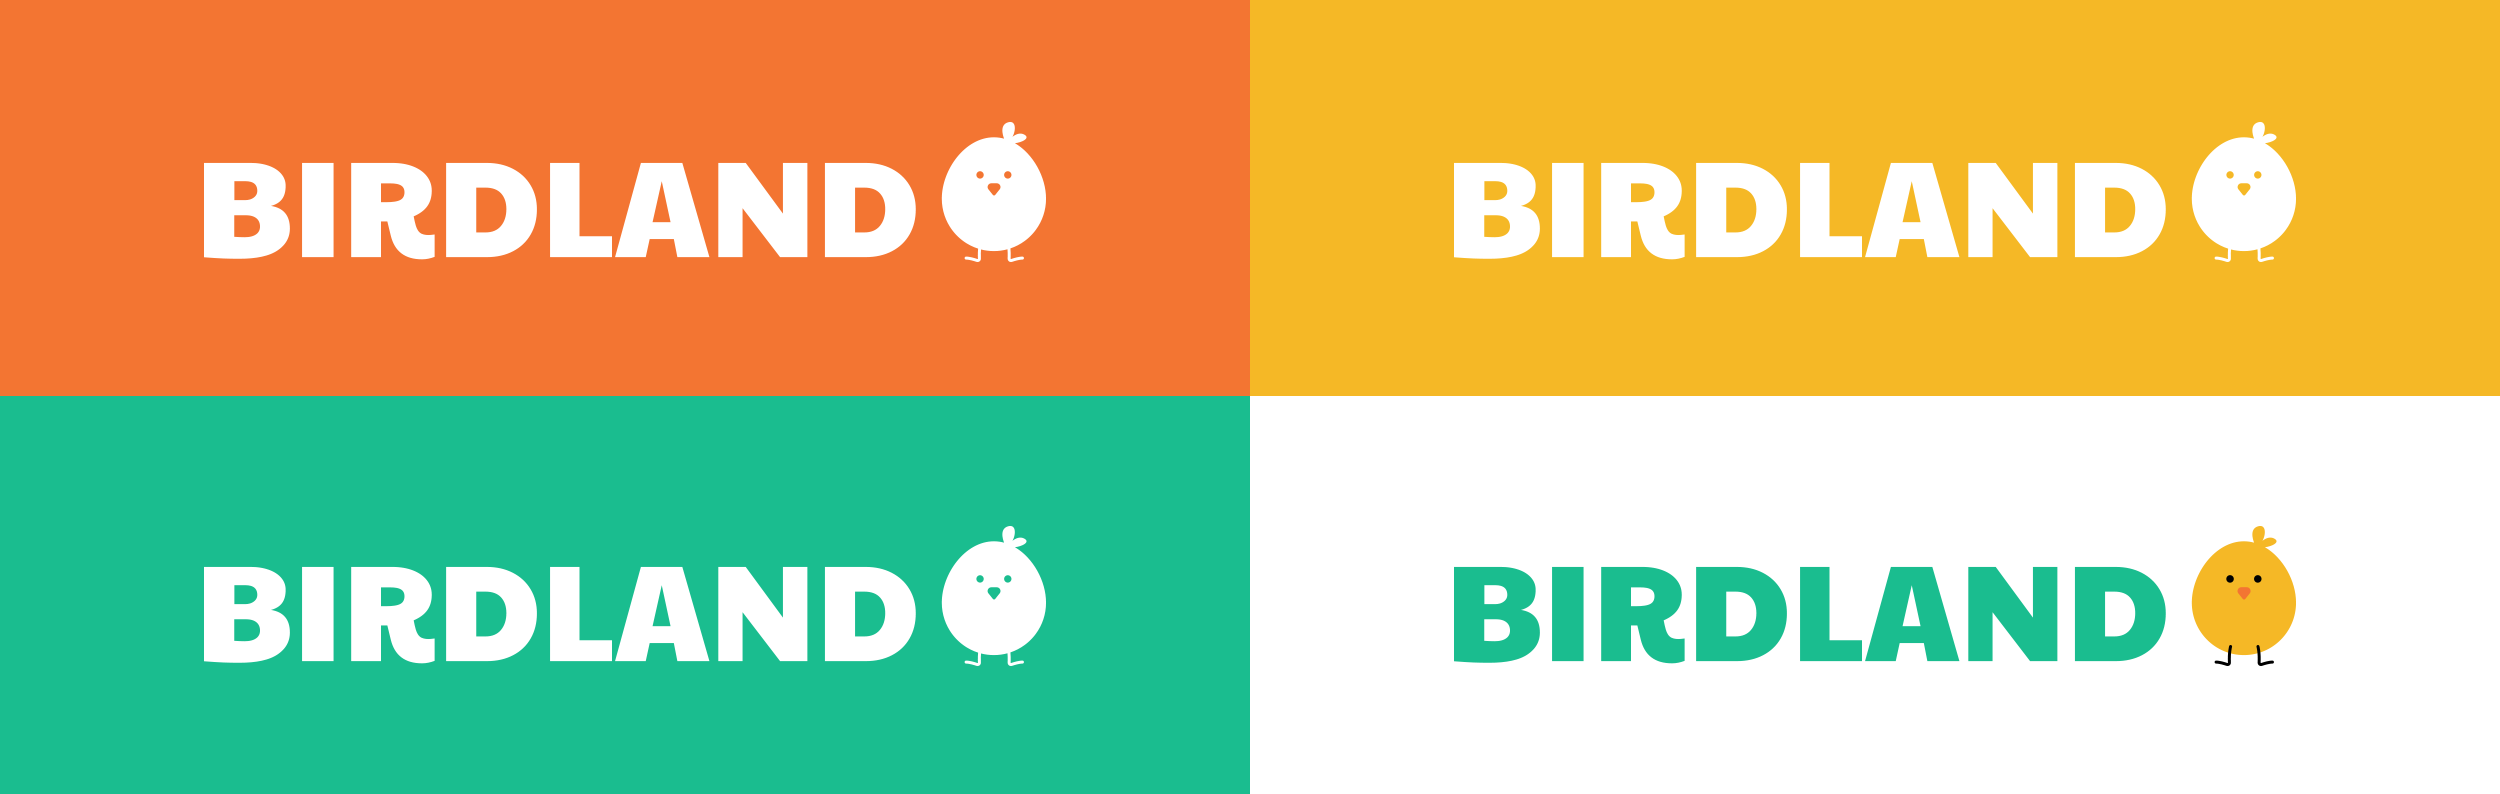 birdland_logo_variation